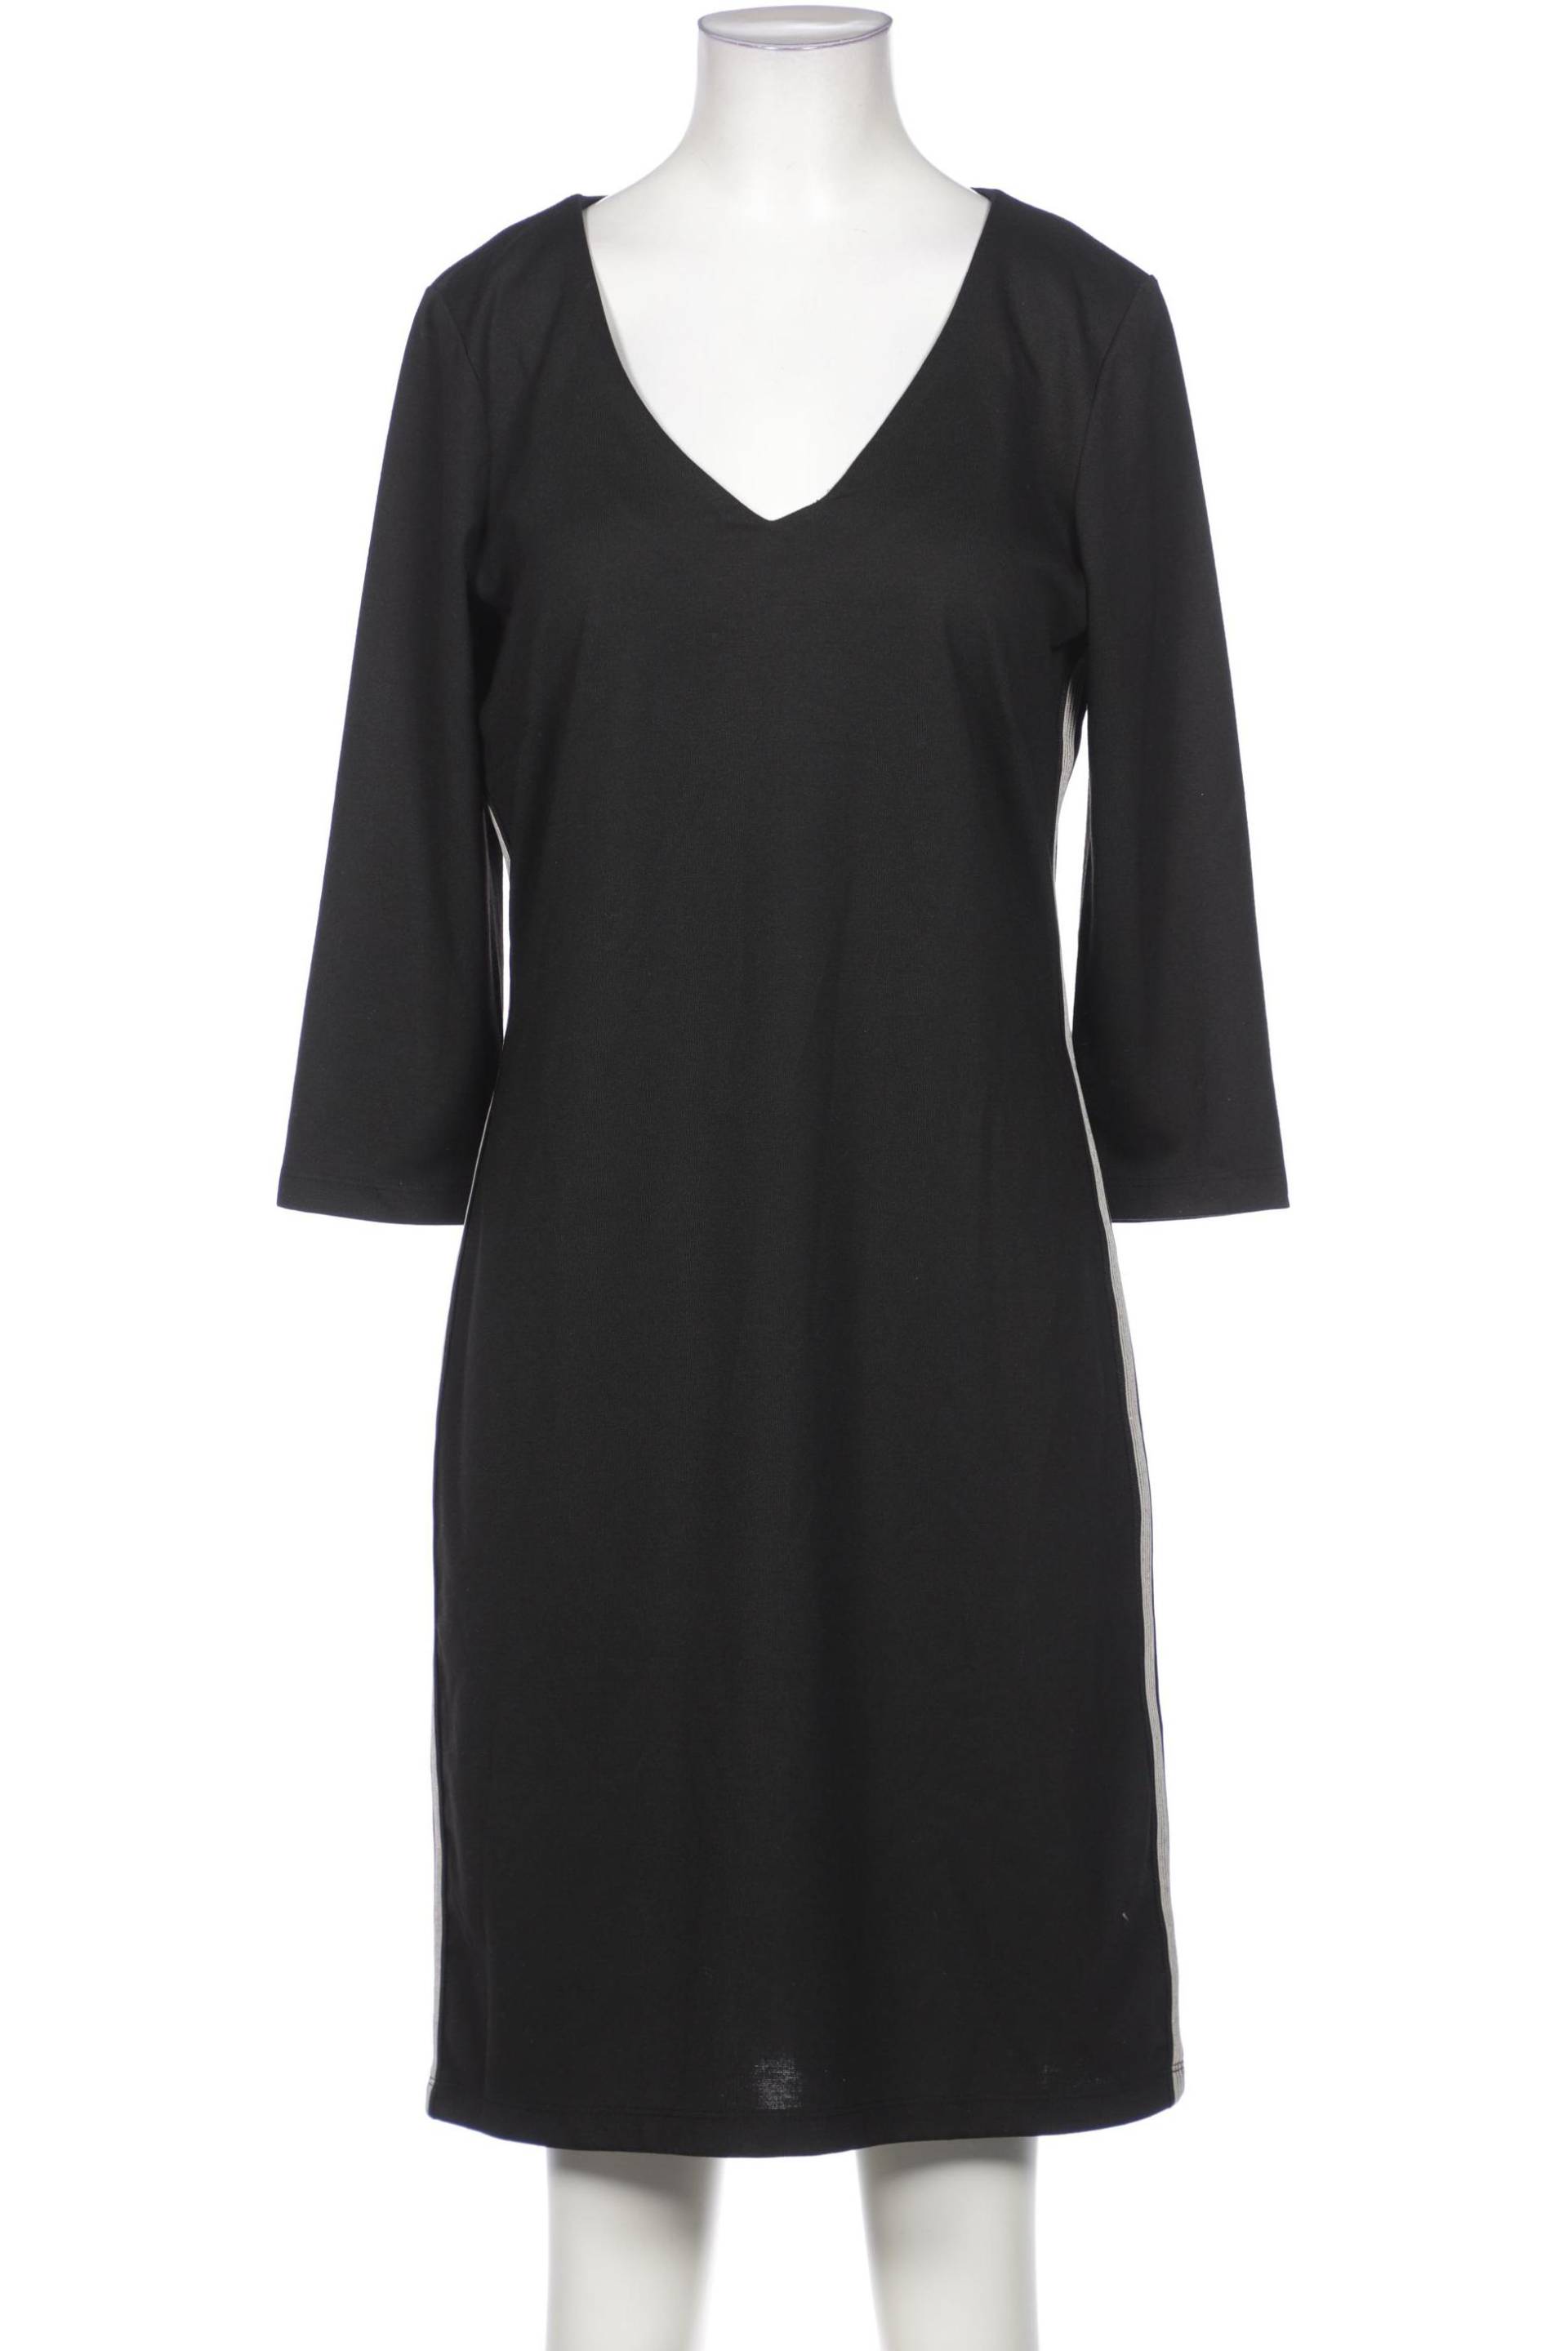 soyaconcept Damen Kleid, schwarz, Gr. 38 von soyaconcept